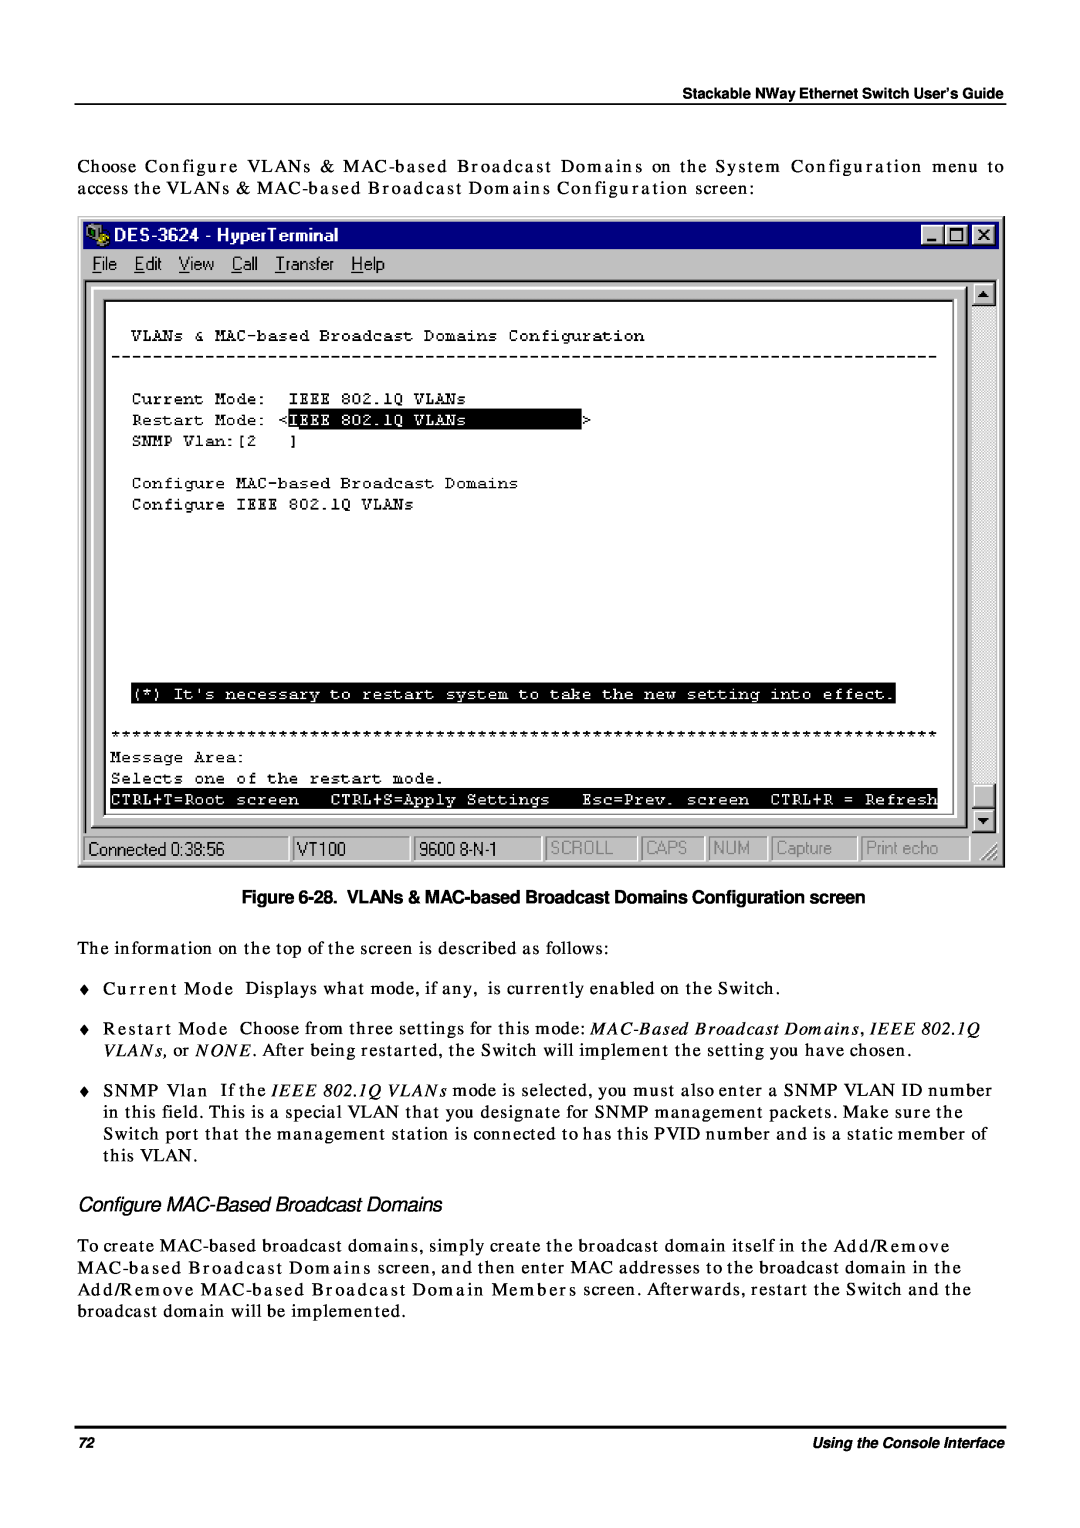 D-Link DES-3624 manual Configure MAC-Based Broadcast Domains, 28. VLANs & MAC-based Broadcast Domains Configuration screen 